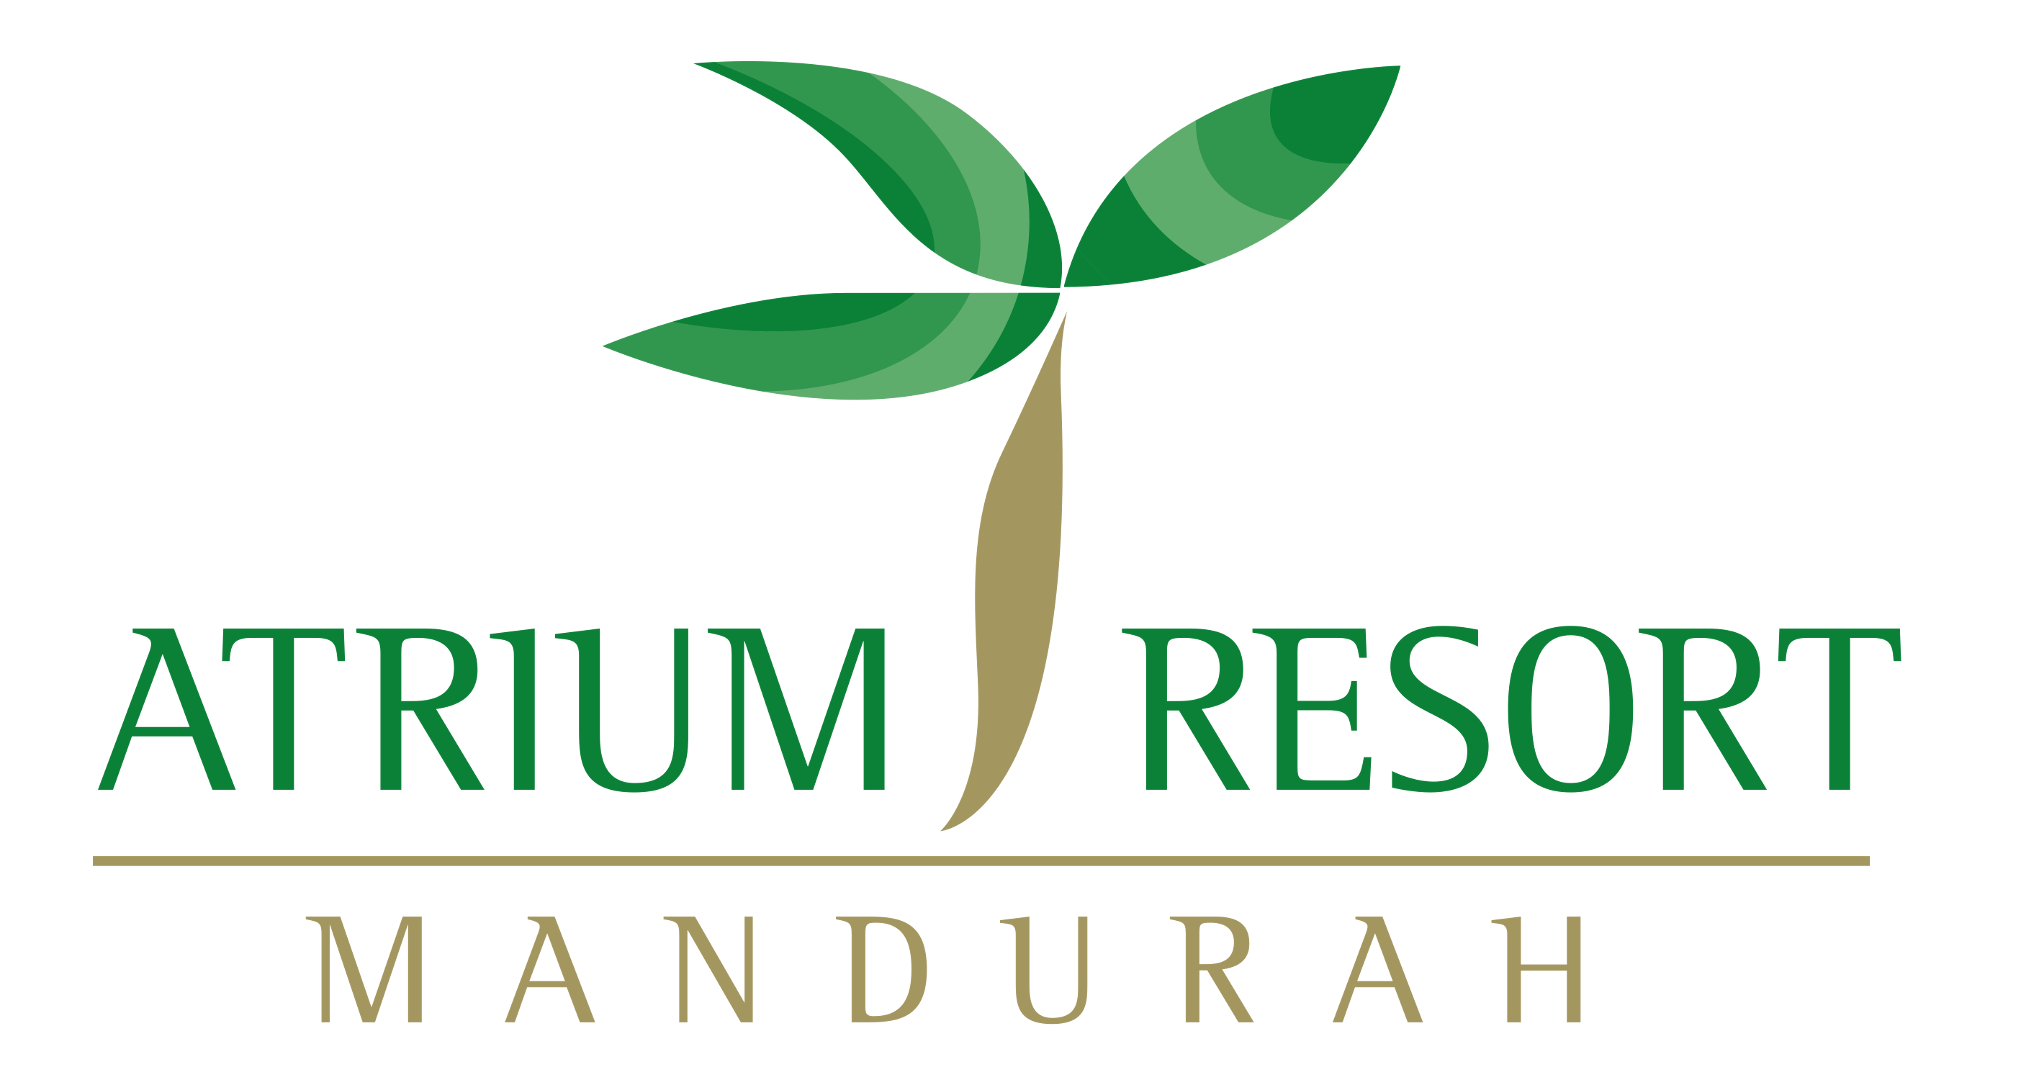 Atrium Resort Hotel Mandurah - Accommodation Directory